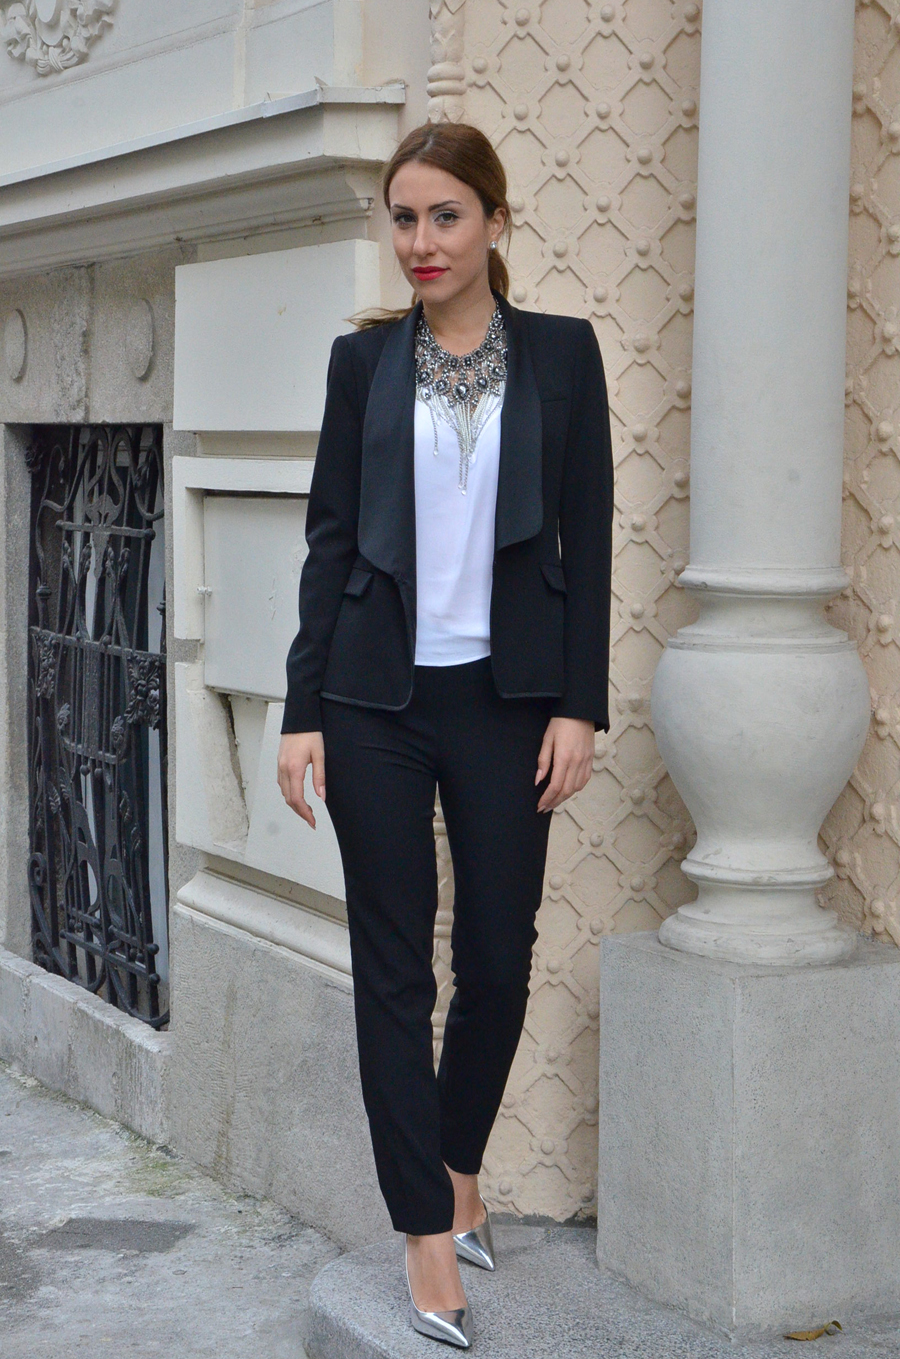 Women's tuxedo Outfit / Stasha Fashion by Anastasija Milojevic